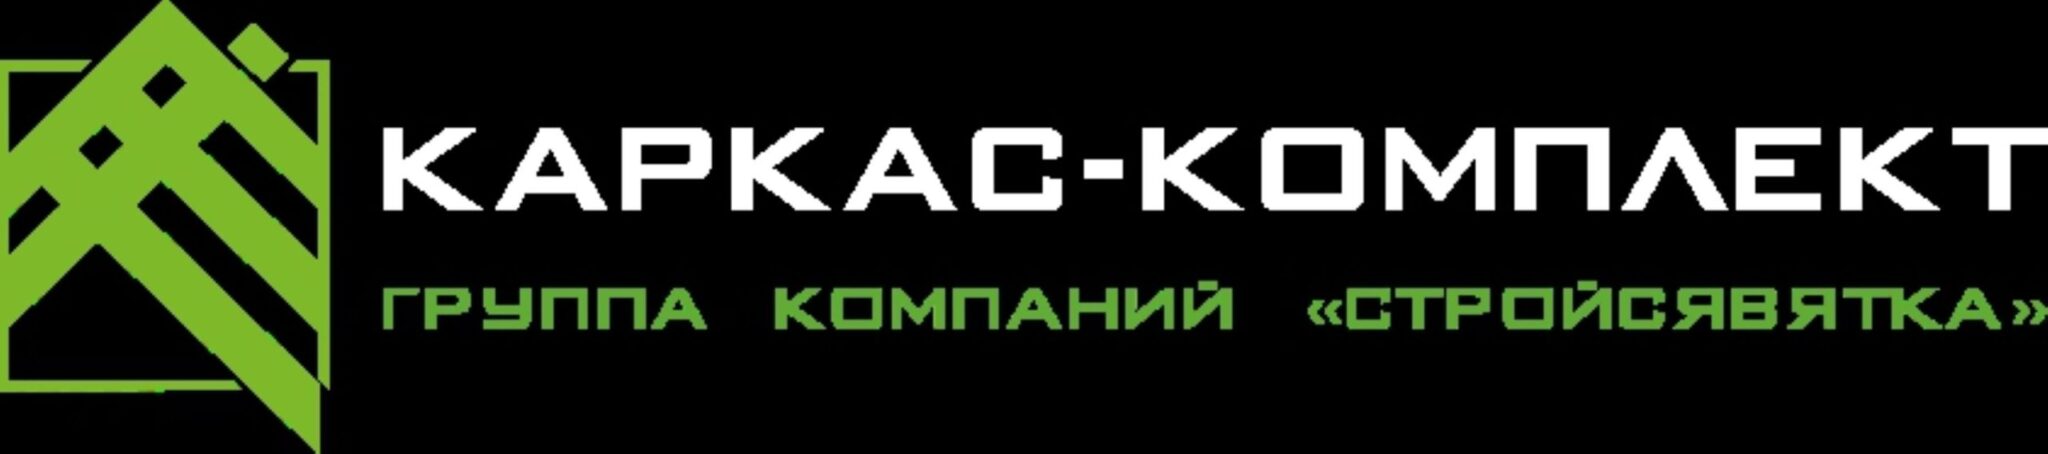 karkas-komplekt-logo-1-scaled